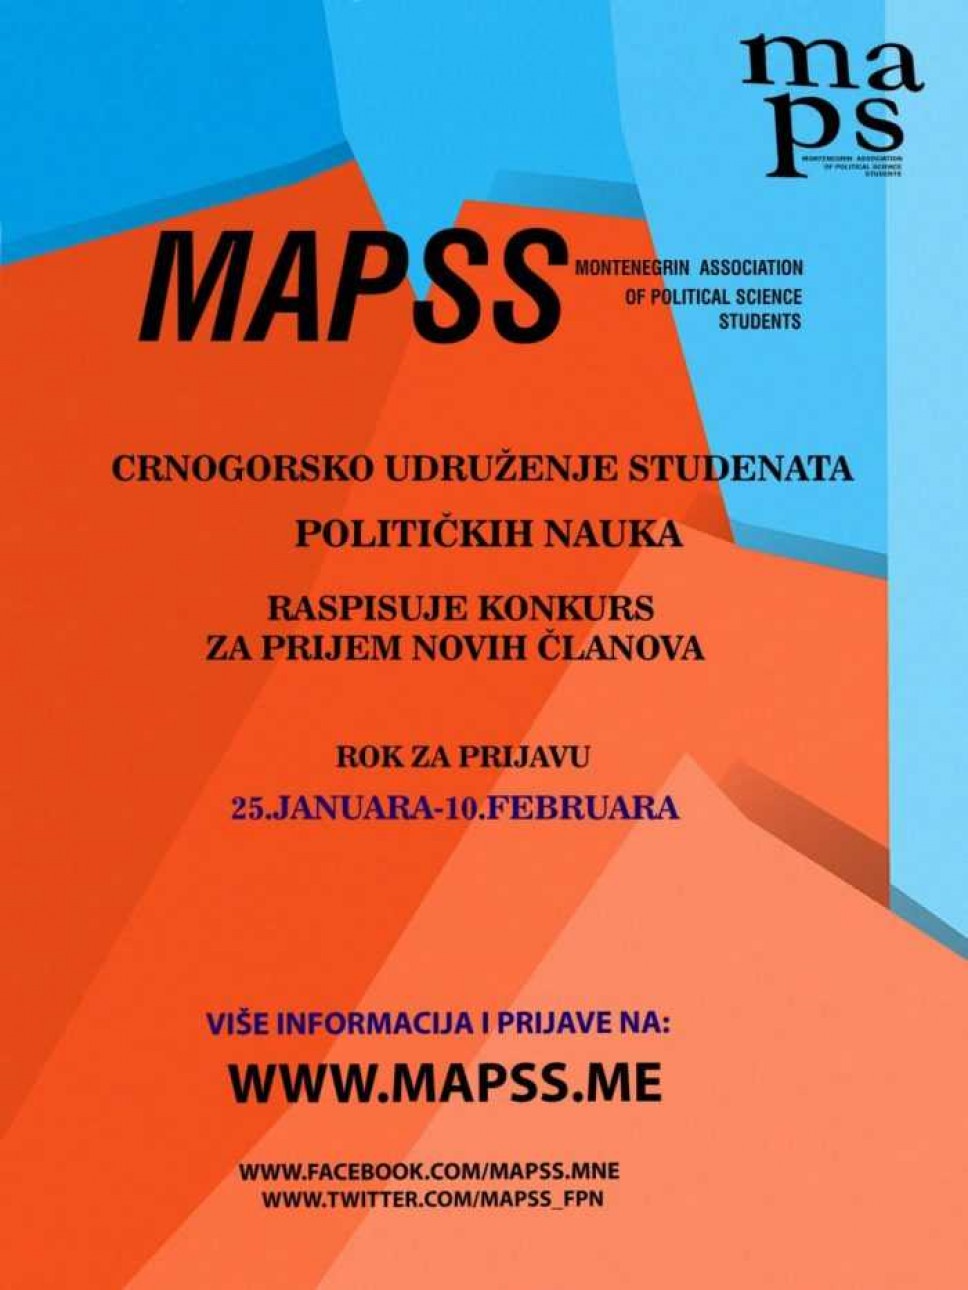 MAPSS - Konkurs za prijem novih članova